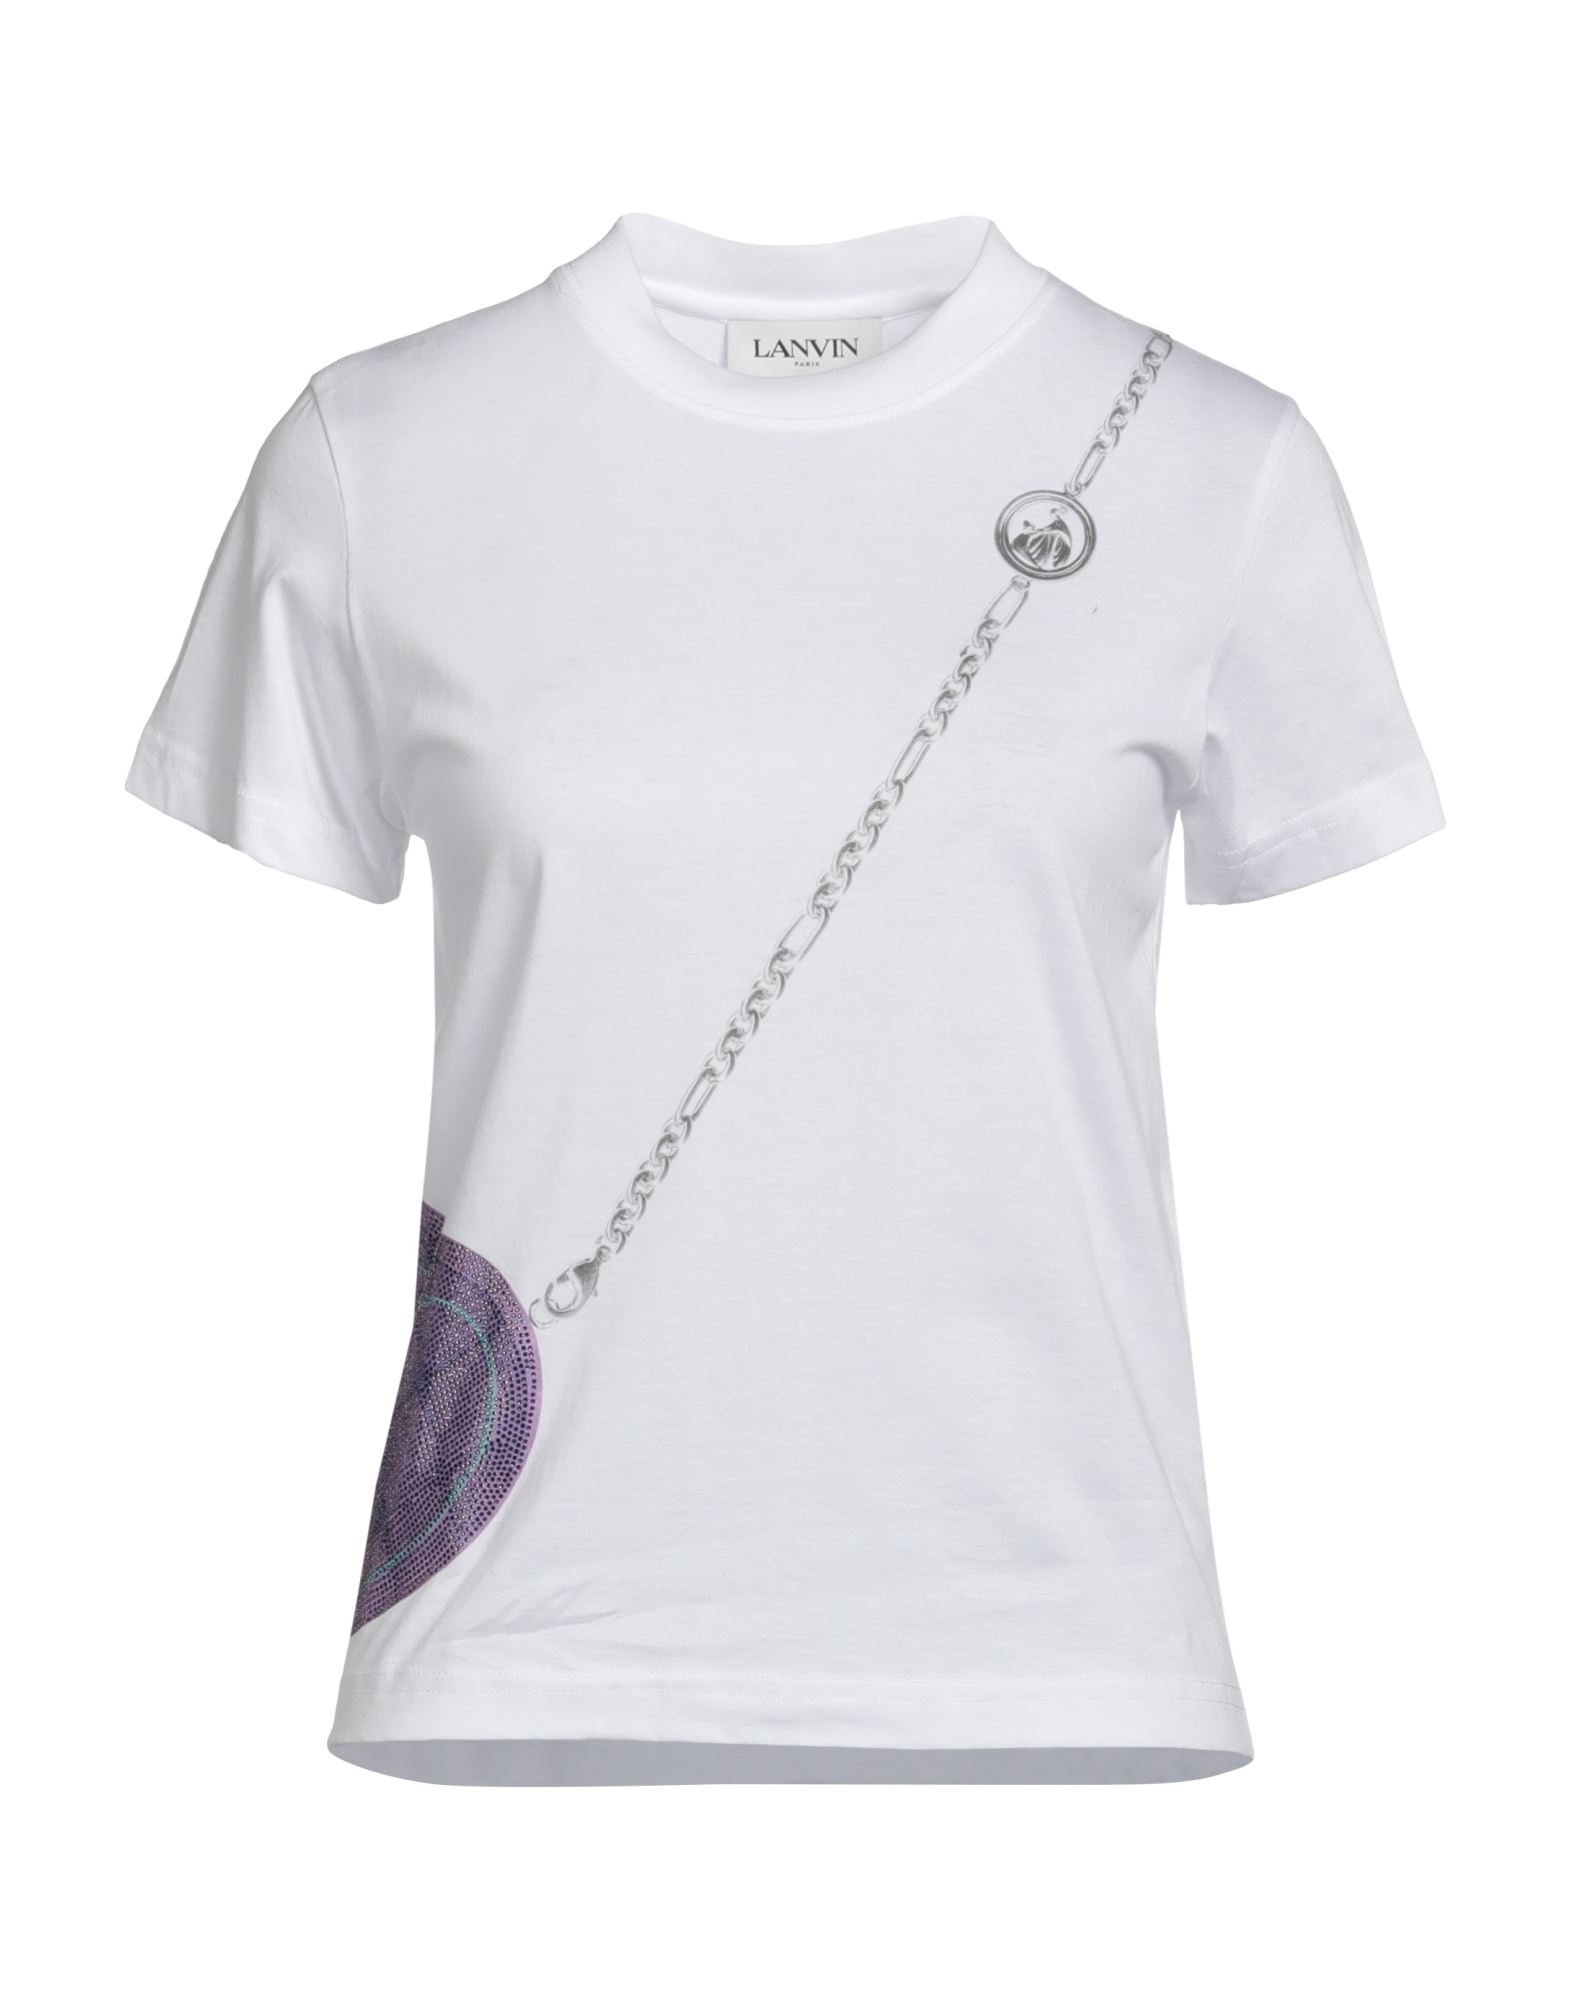 LANVIN T-shirts Damen Weiß von LANVIN